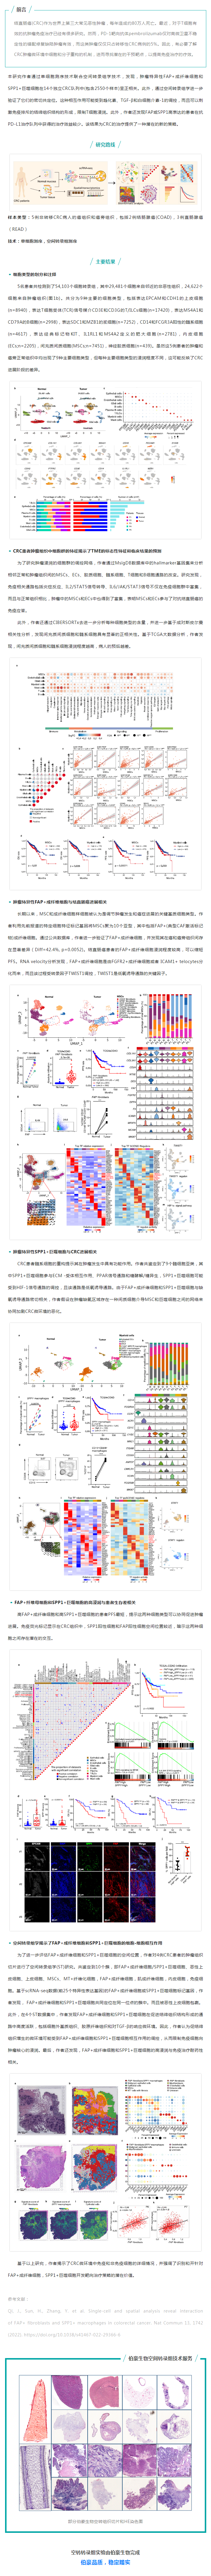 空转实验文章 NC- 上海免疫所苏冰_叶幼琼团队揭示结直肠癌肿瘤边界间质细胞与巨噬细胞互作模式